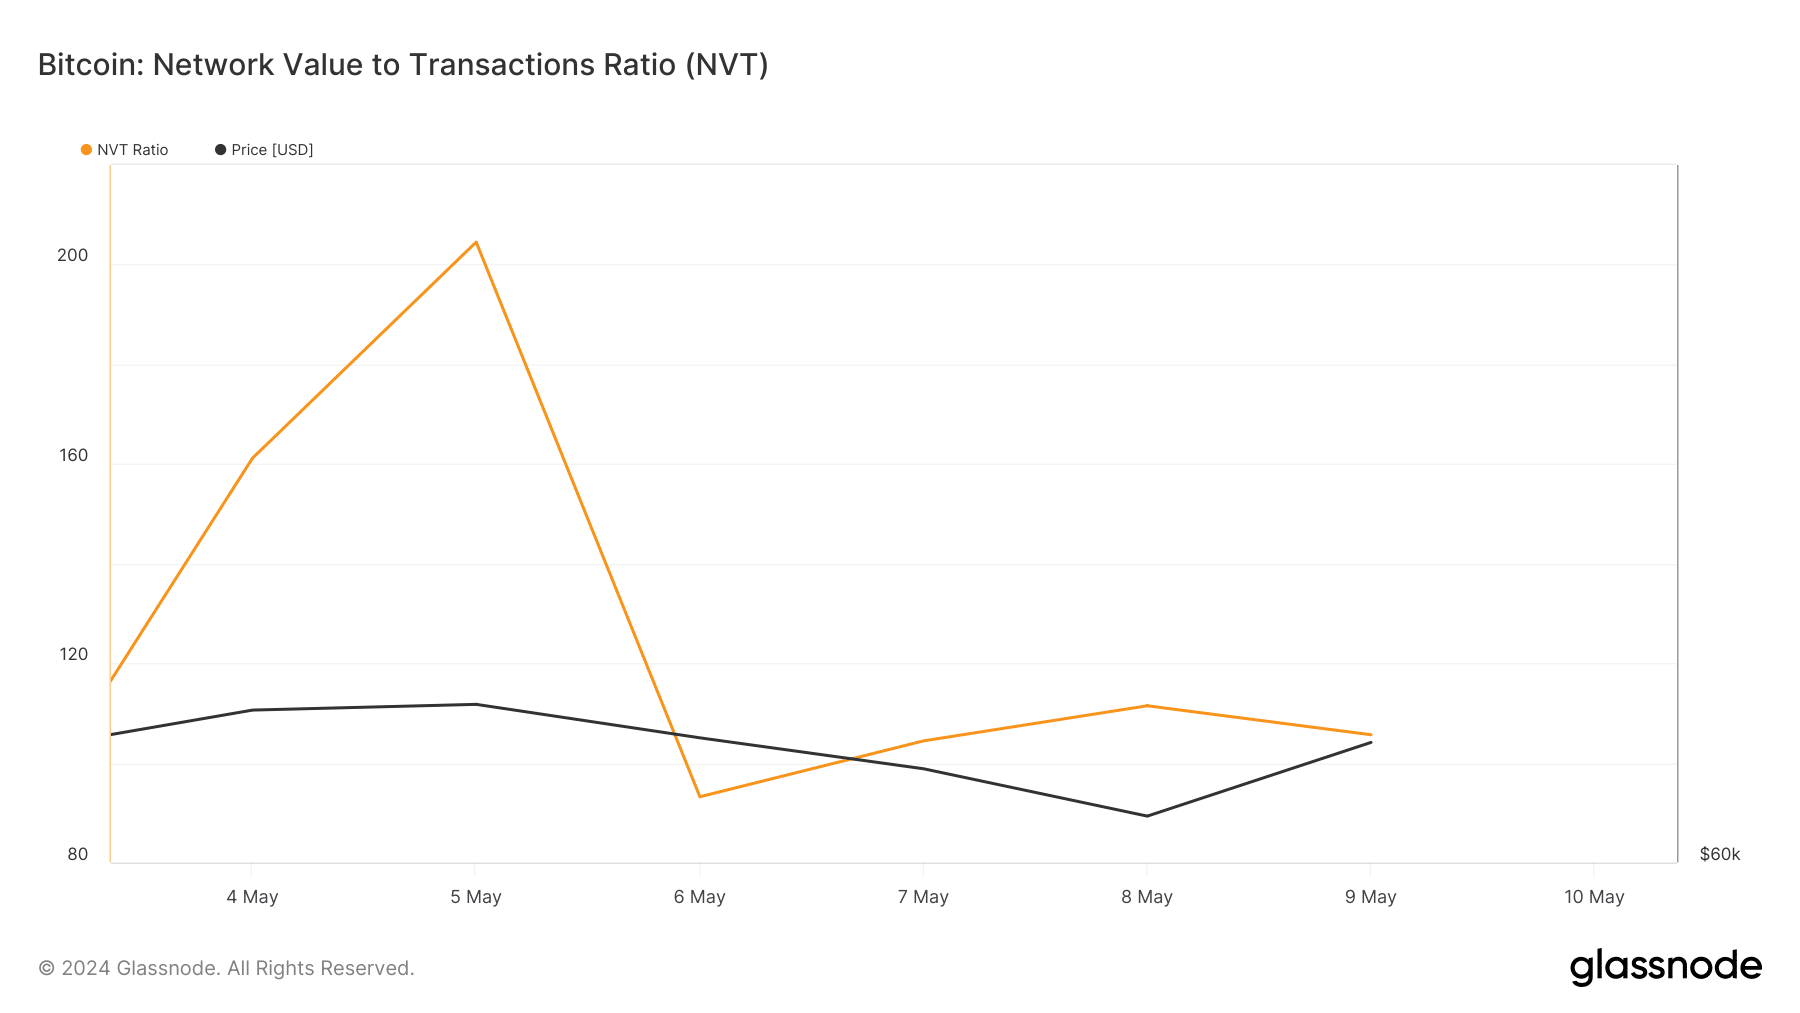 Bitcoin's NVT Ratio dropped